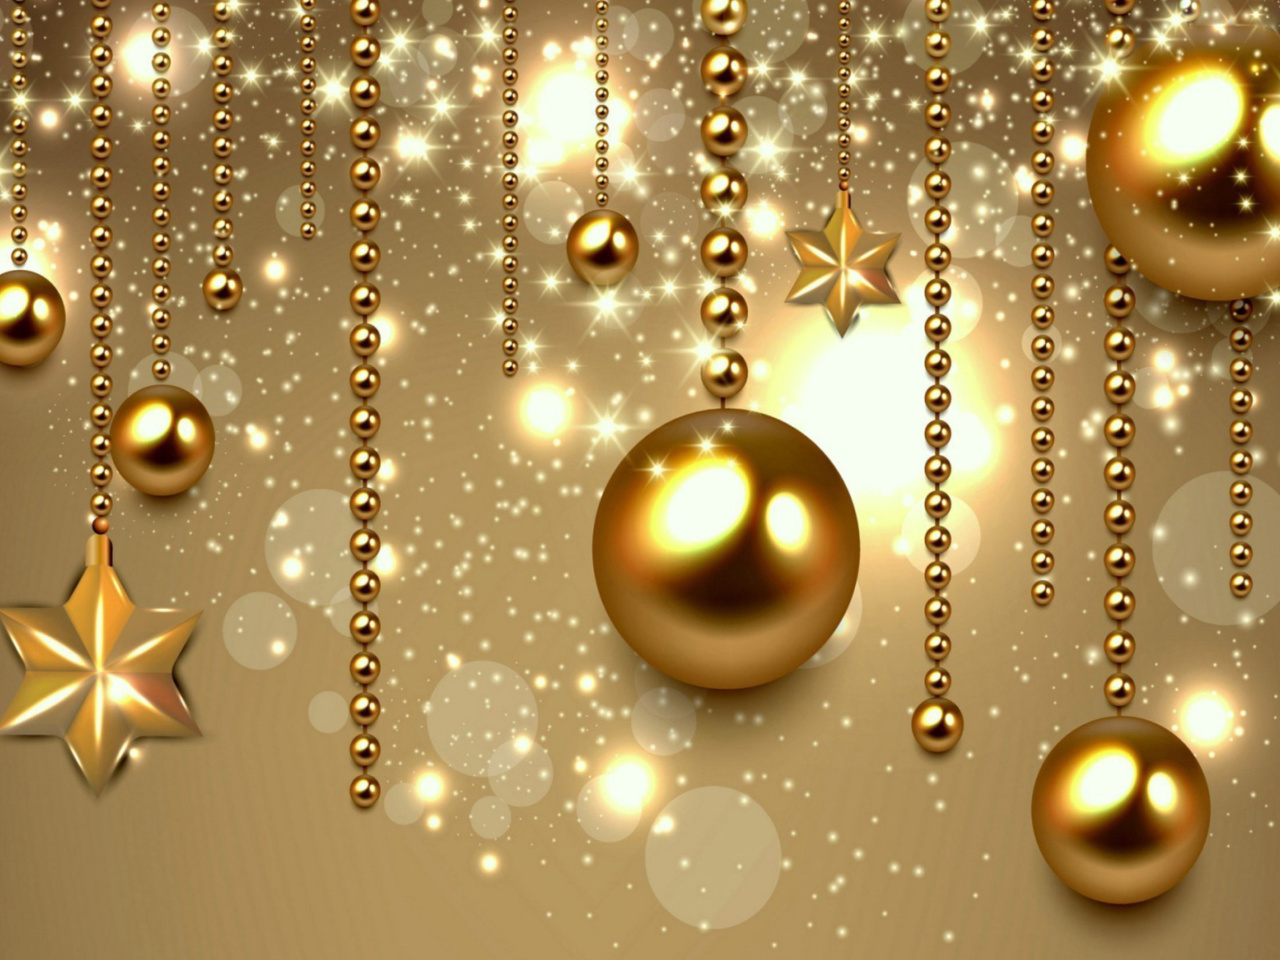 Das Golden Christmas Balls Wallpaper 1280x960